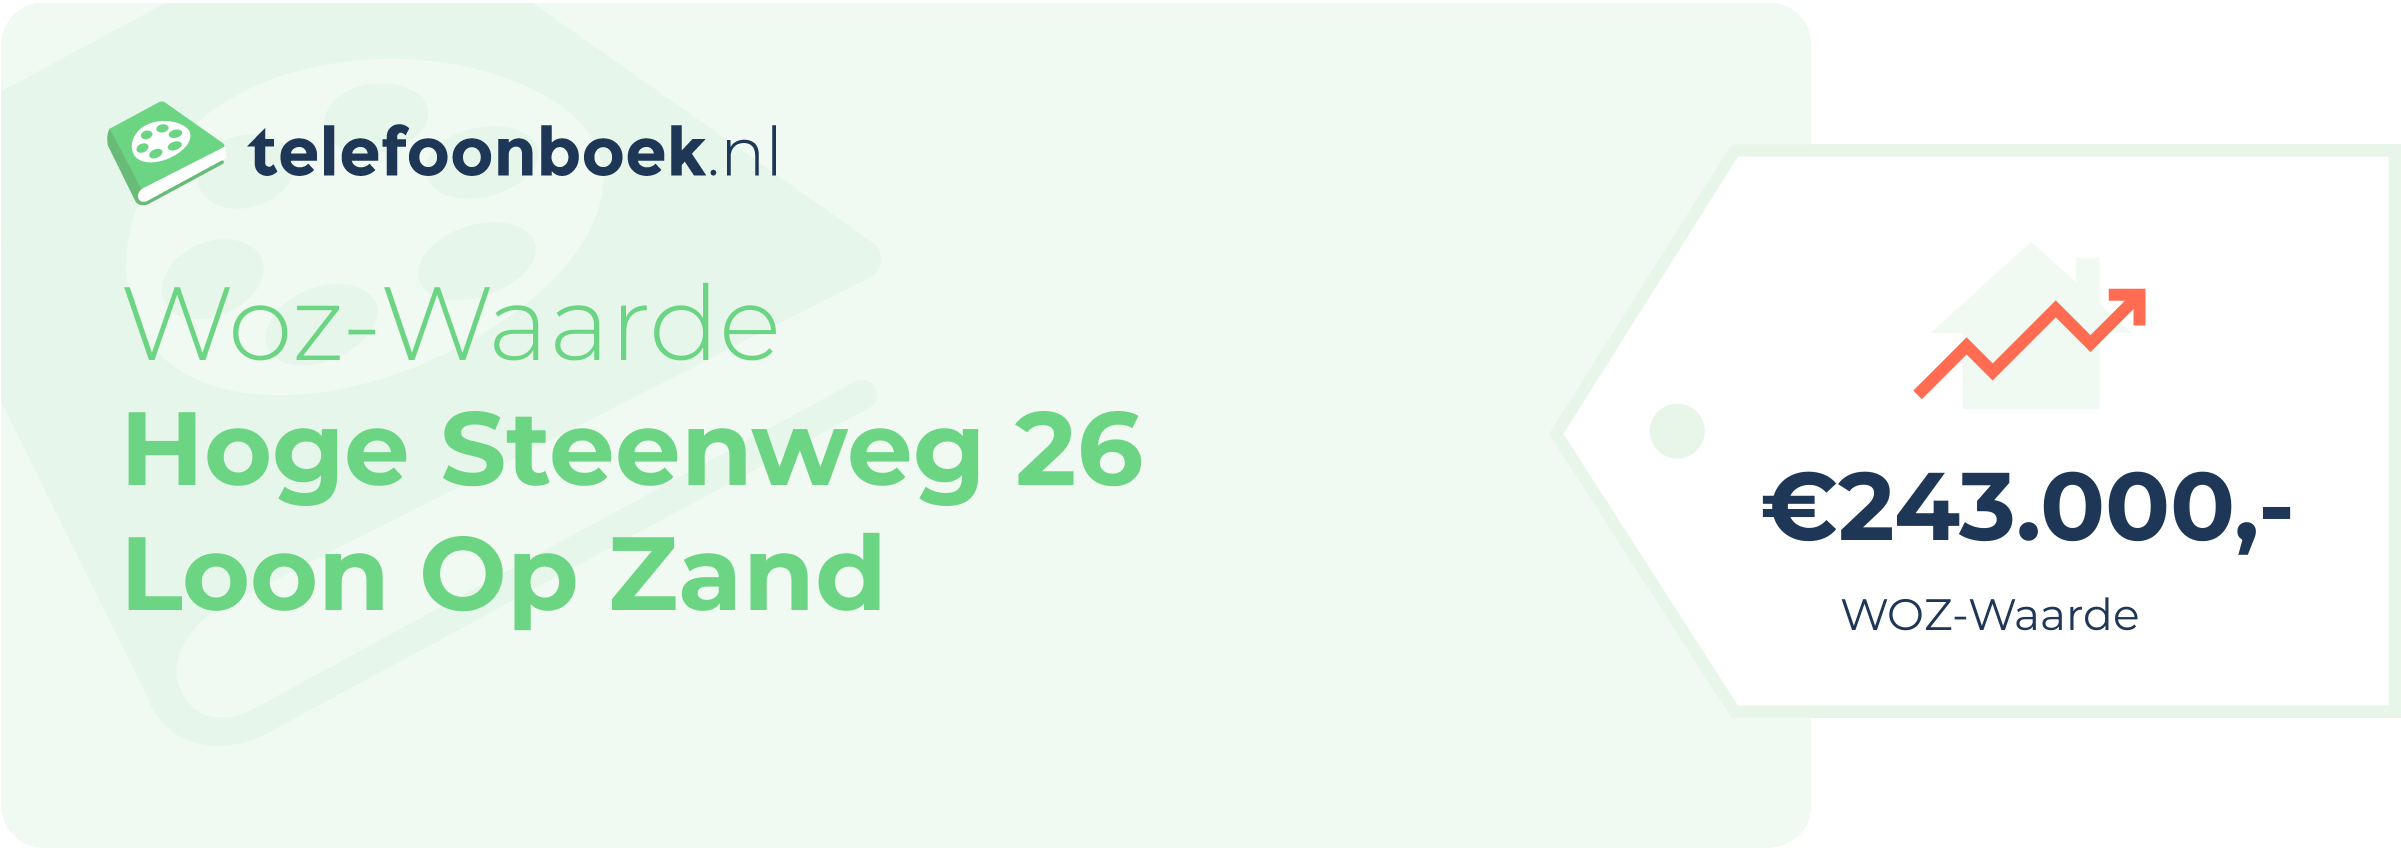 WOZ-waarde Hoge Steenweg 26 Loon Op Zand